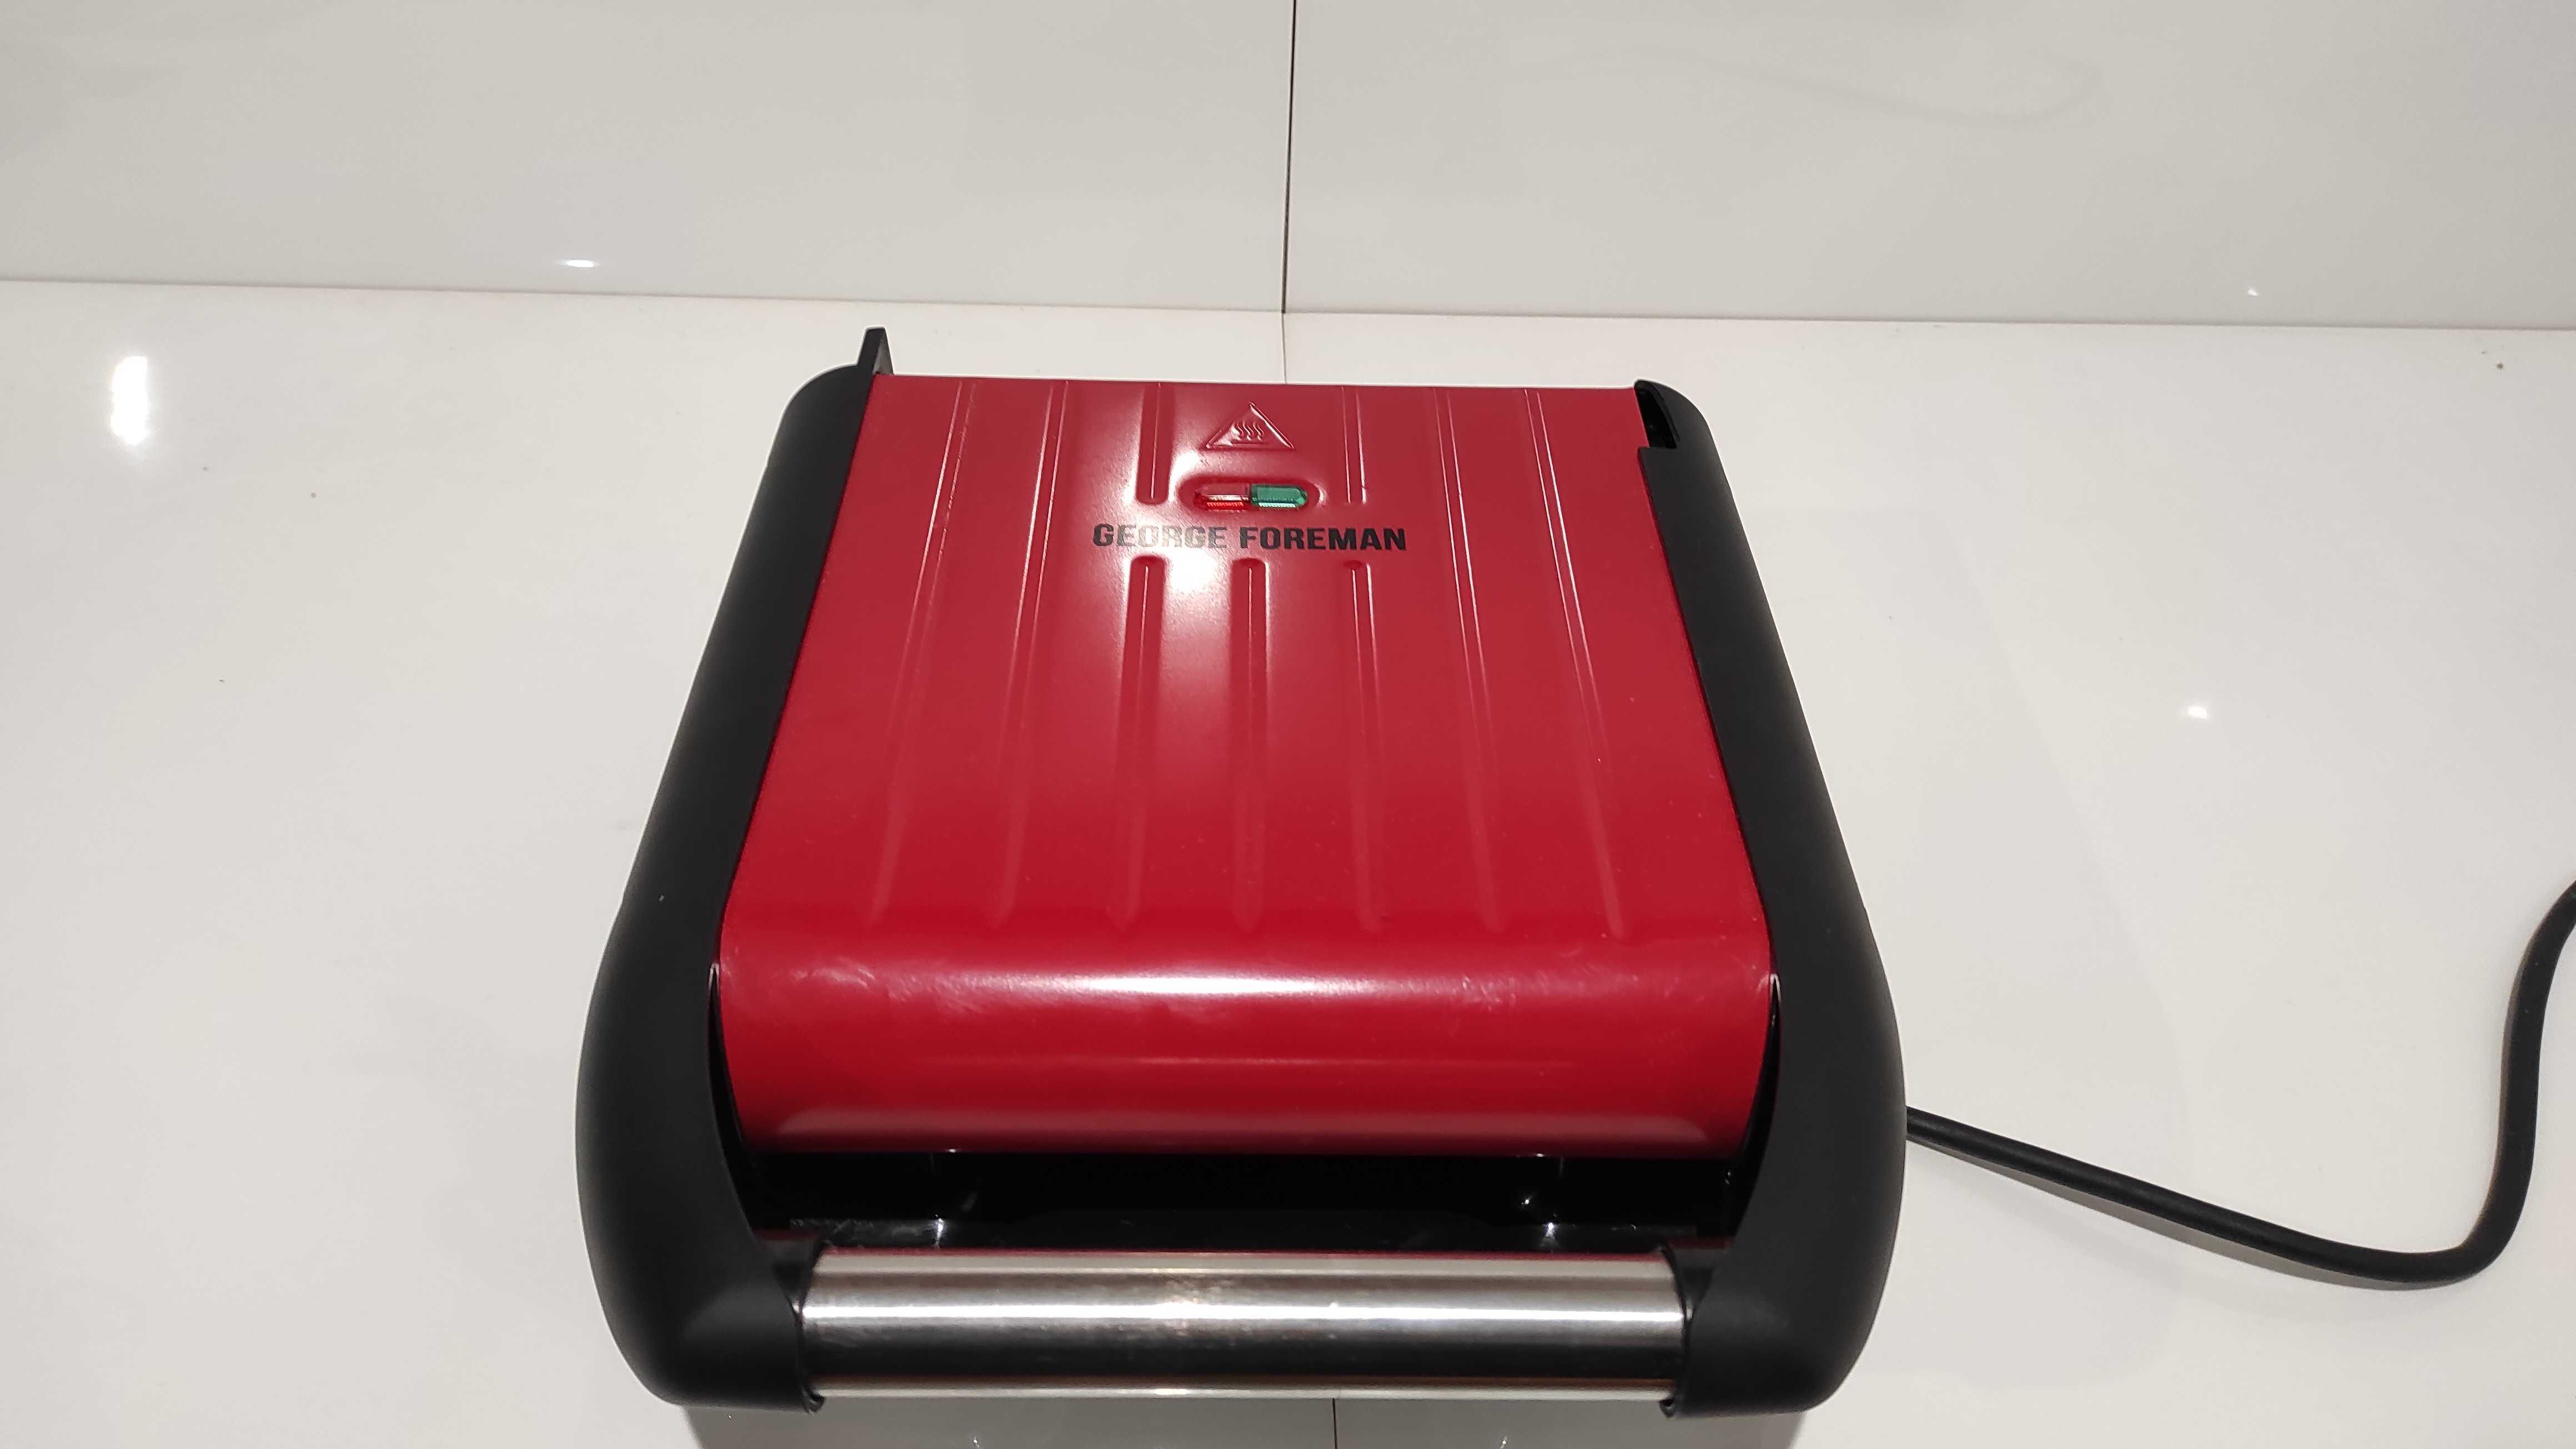 Kontaktowy grill elektryczny George Foreman 25030/56 czerwony 1200 W